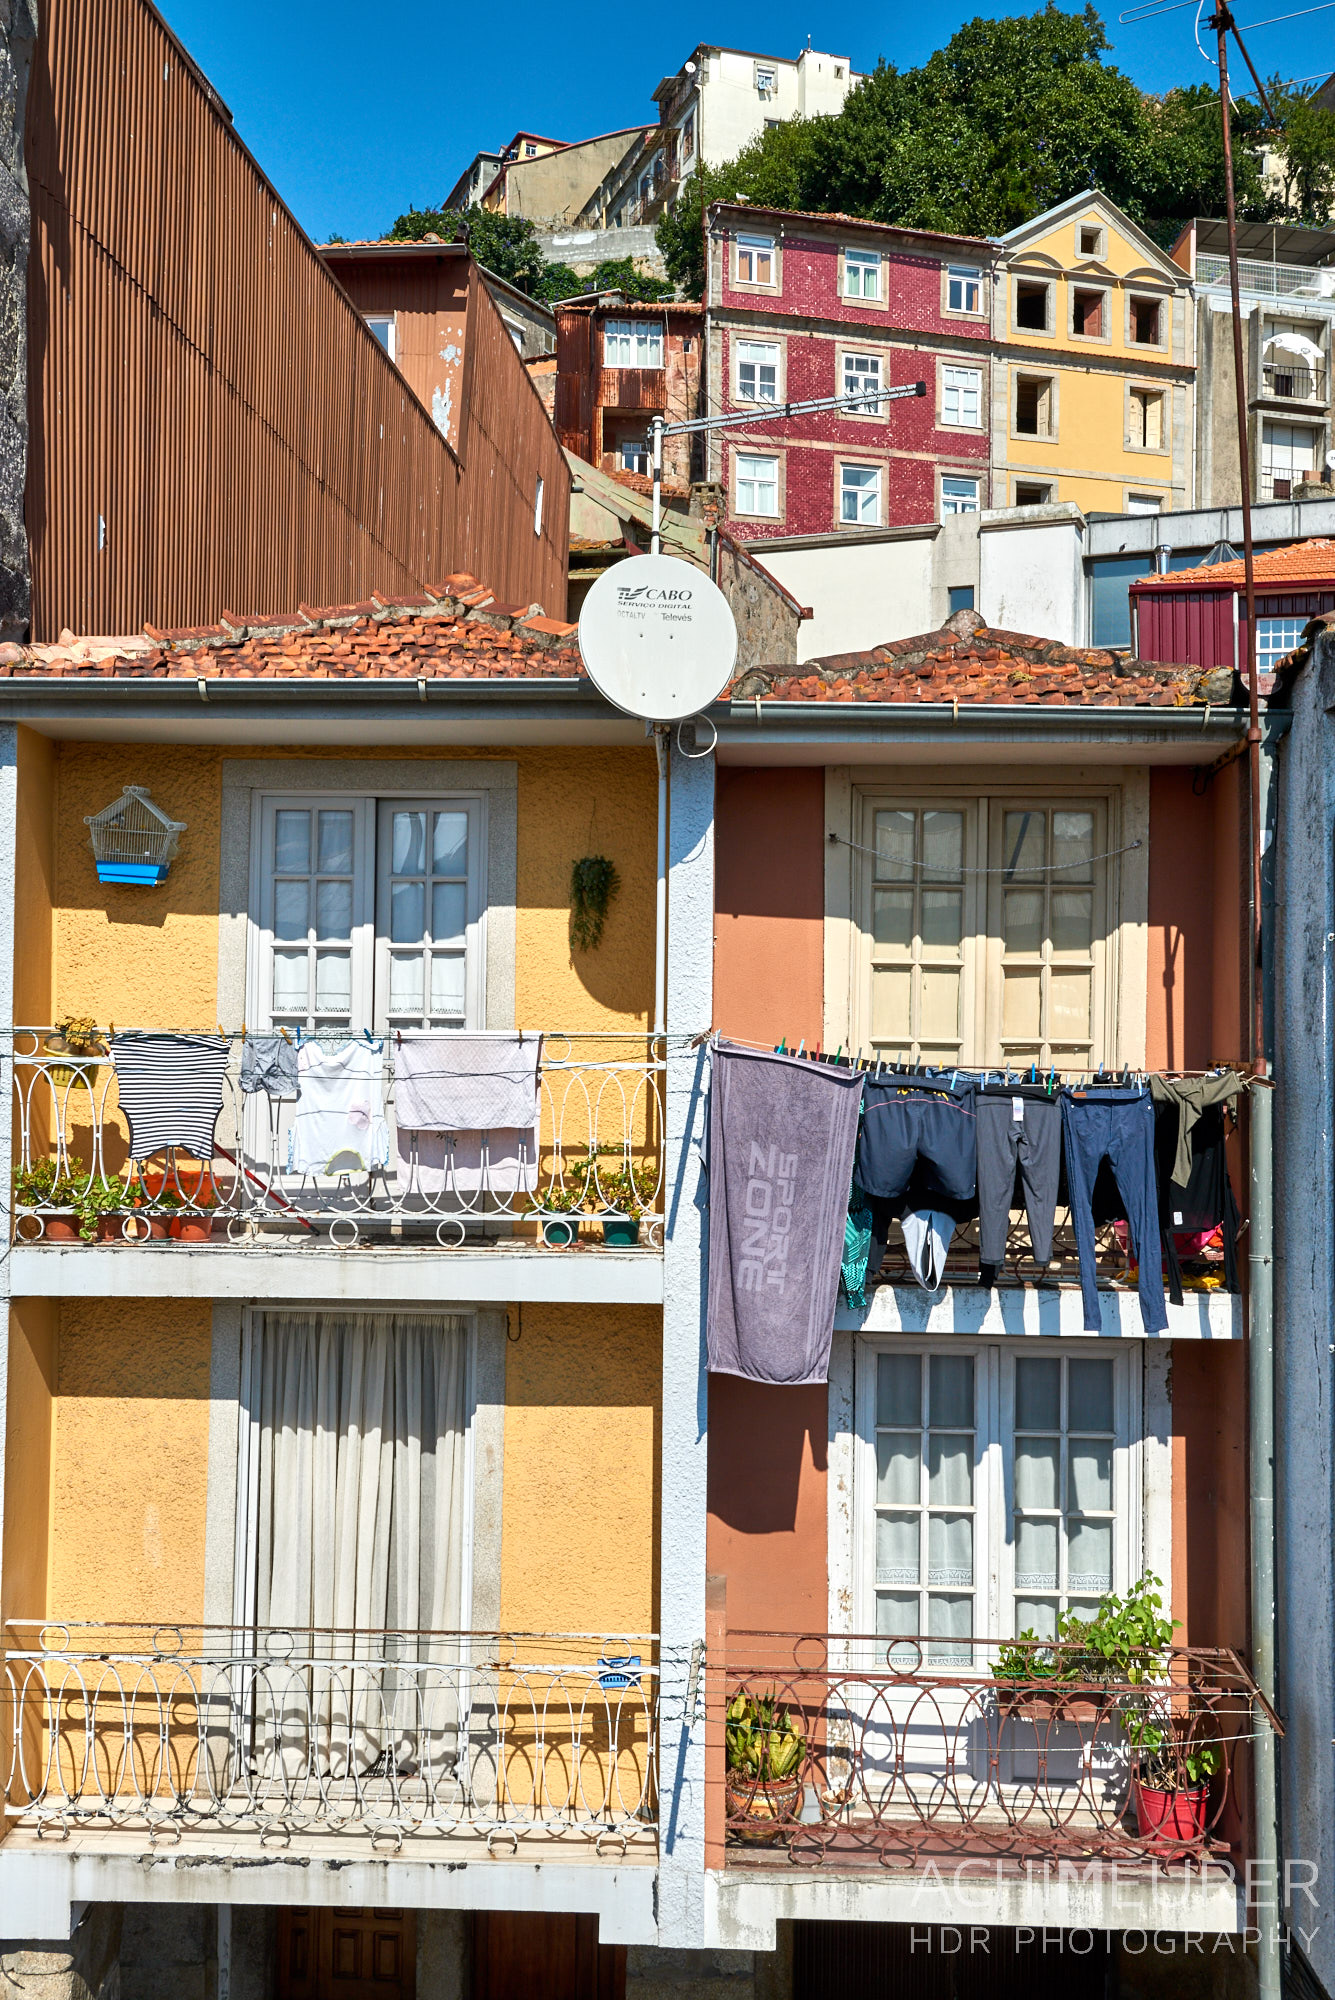 Die Küstenstadt Porto im Norden von Portugal by AchimMeurer.com . 